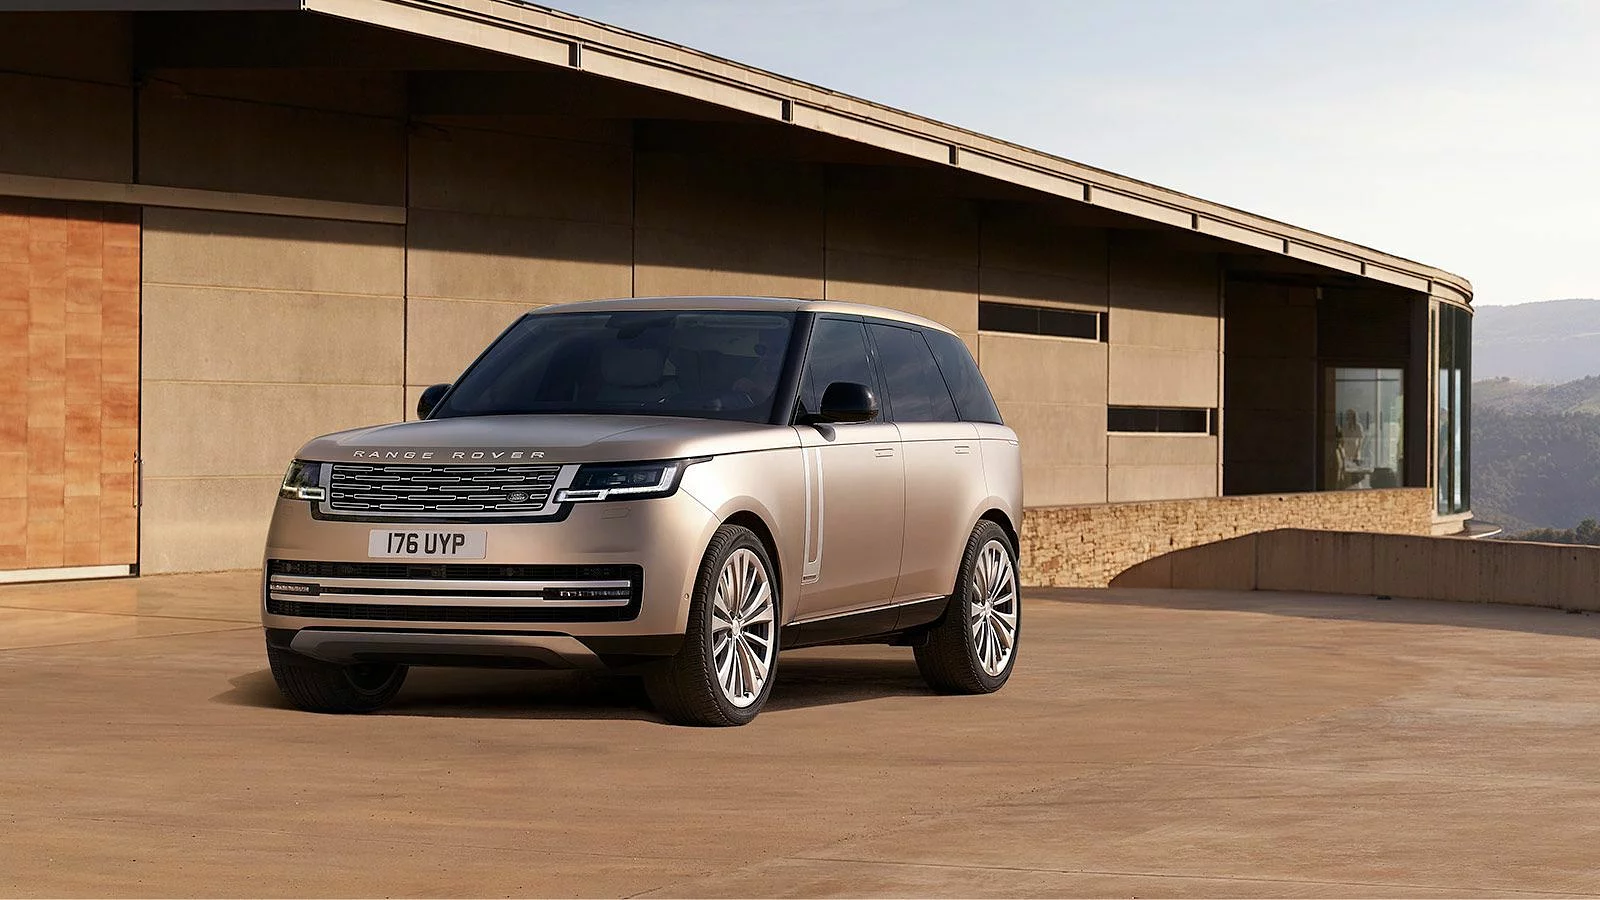 Harga Range Rover Terbaru, Spesifikasi dan Interior 2022!